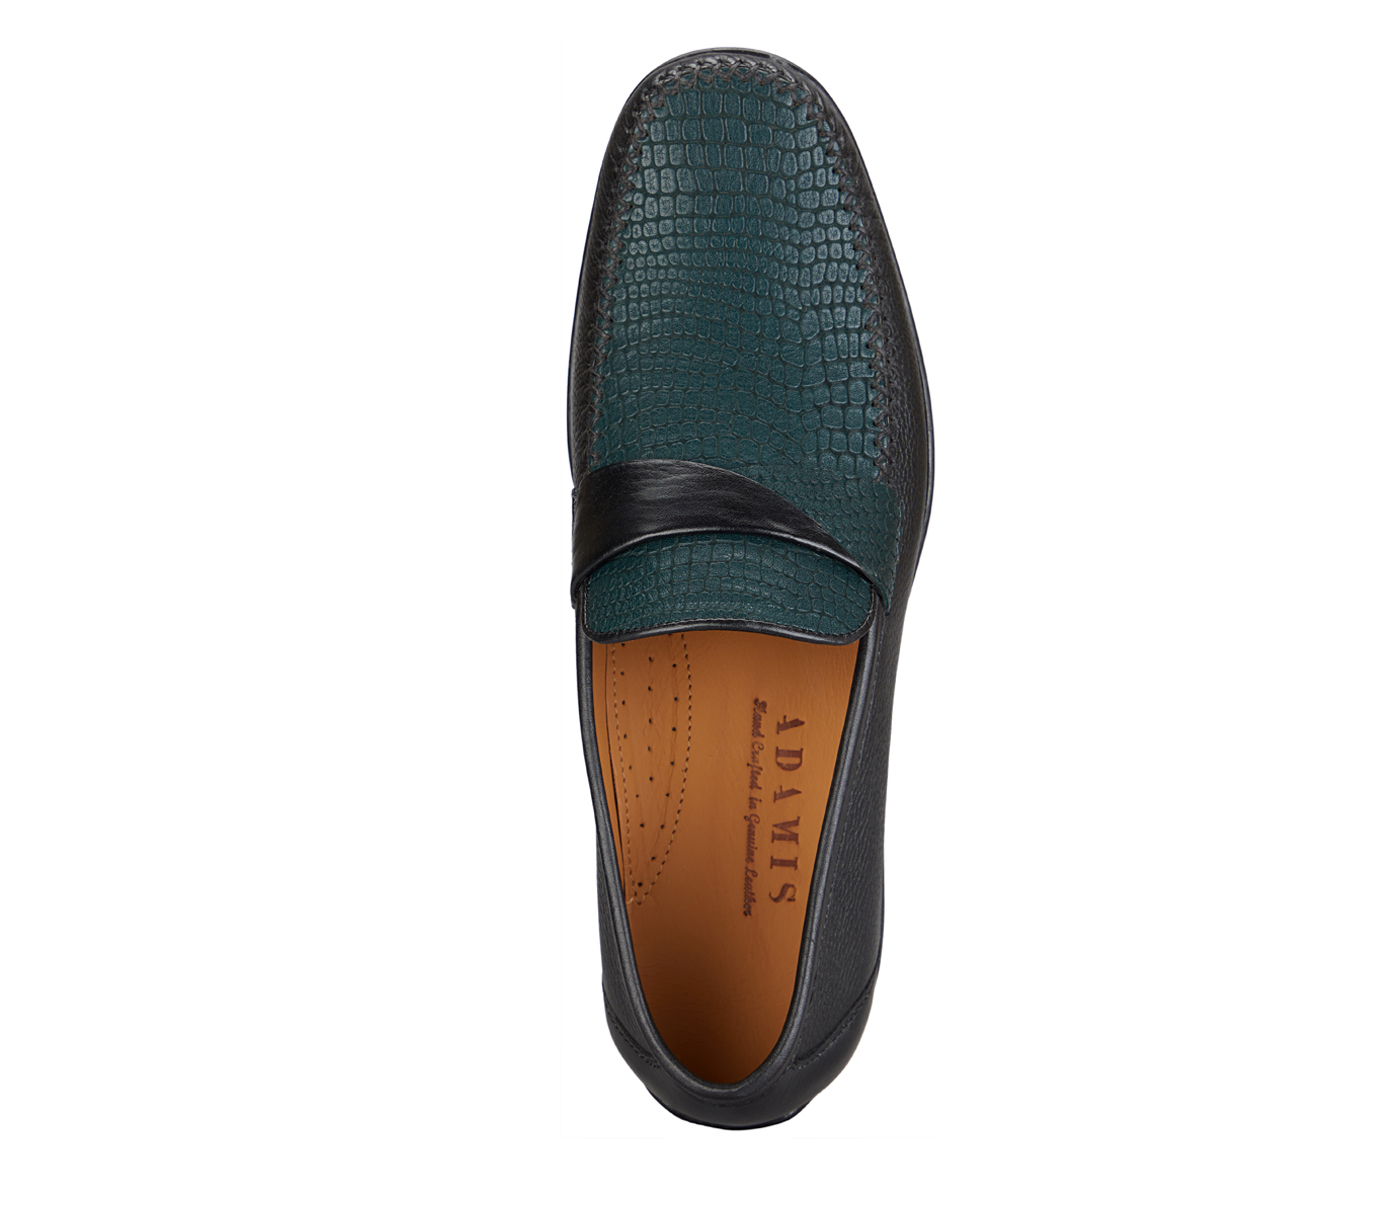 Footwear-Adamis Pure Leather Footwear For Men- - Black/Green